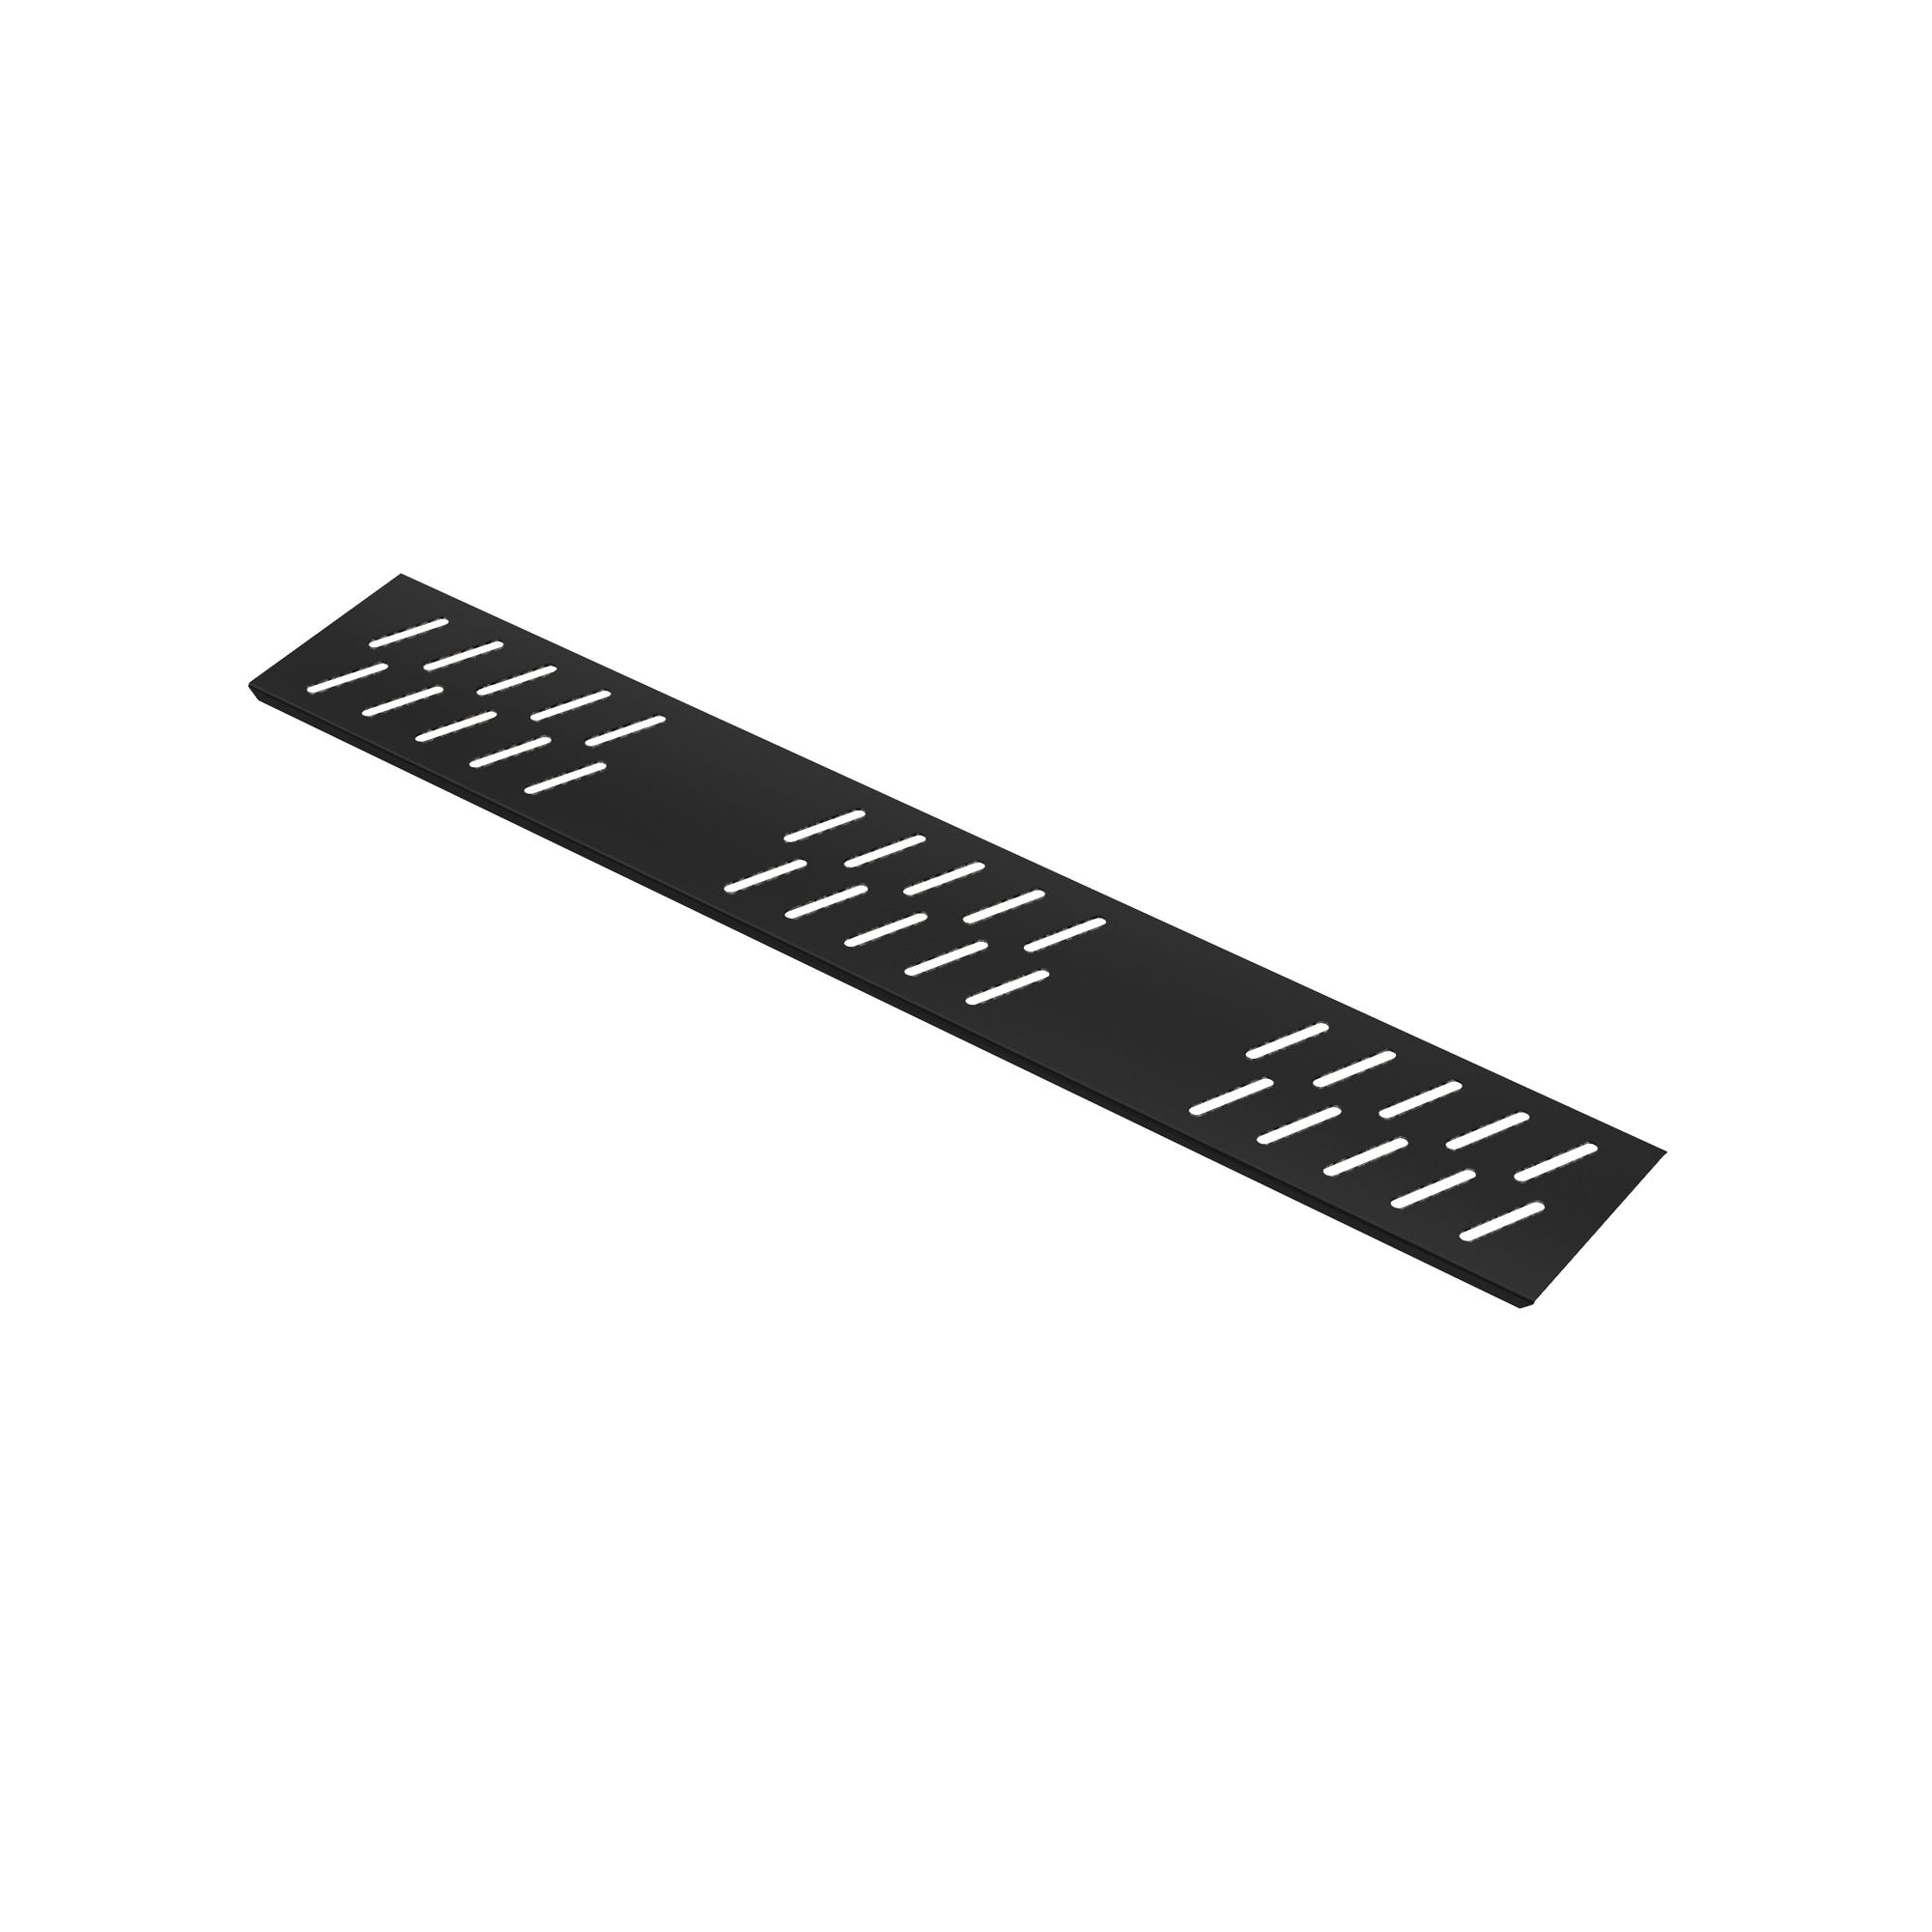 Grille linéaire en Aluminium finition Noir Mat pour receveur - 69.5x11x0.2cm - GRID LINE BLACK MAT 2